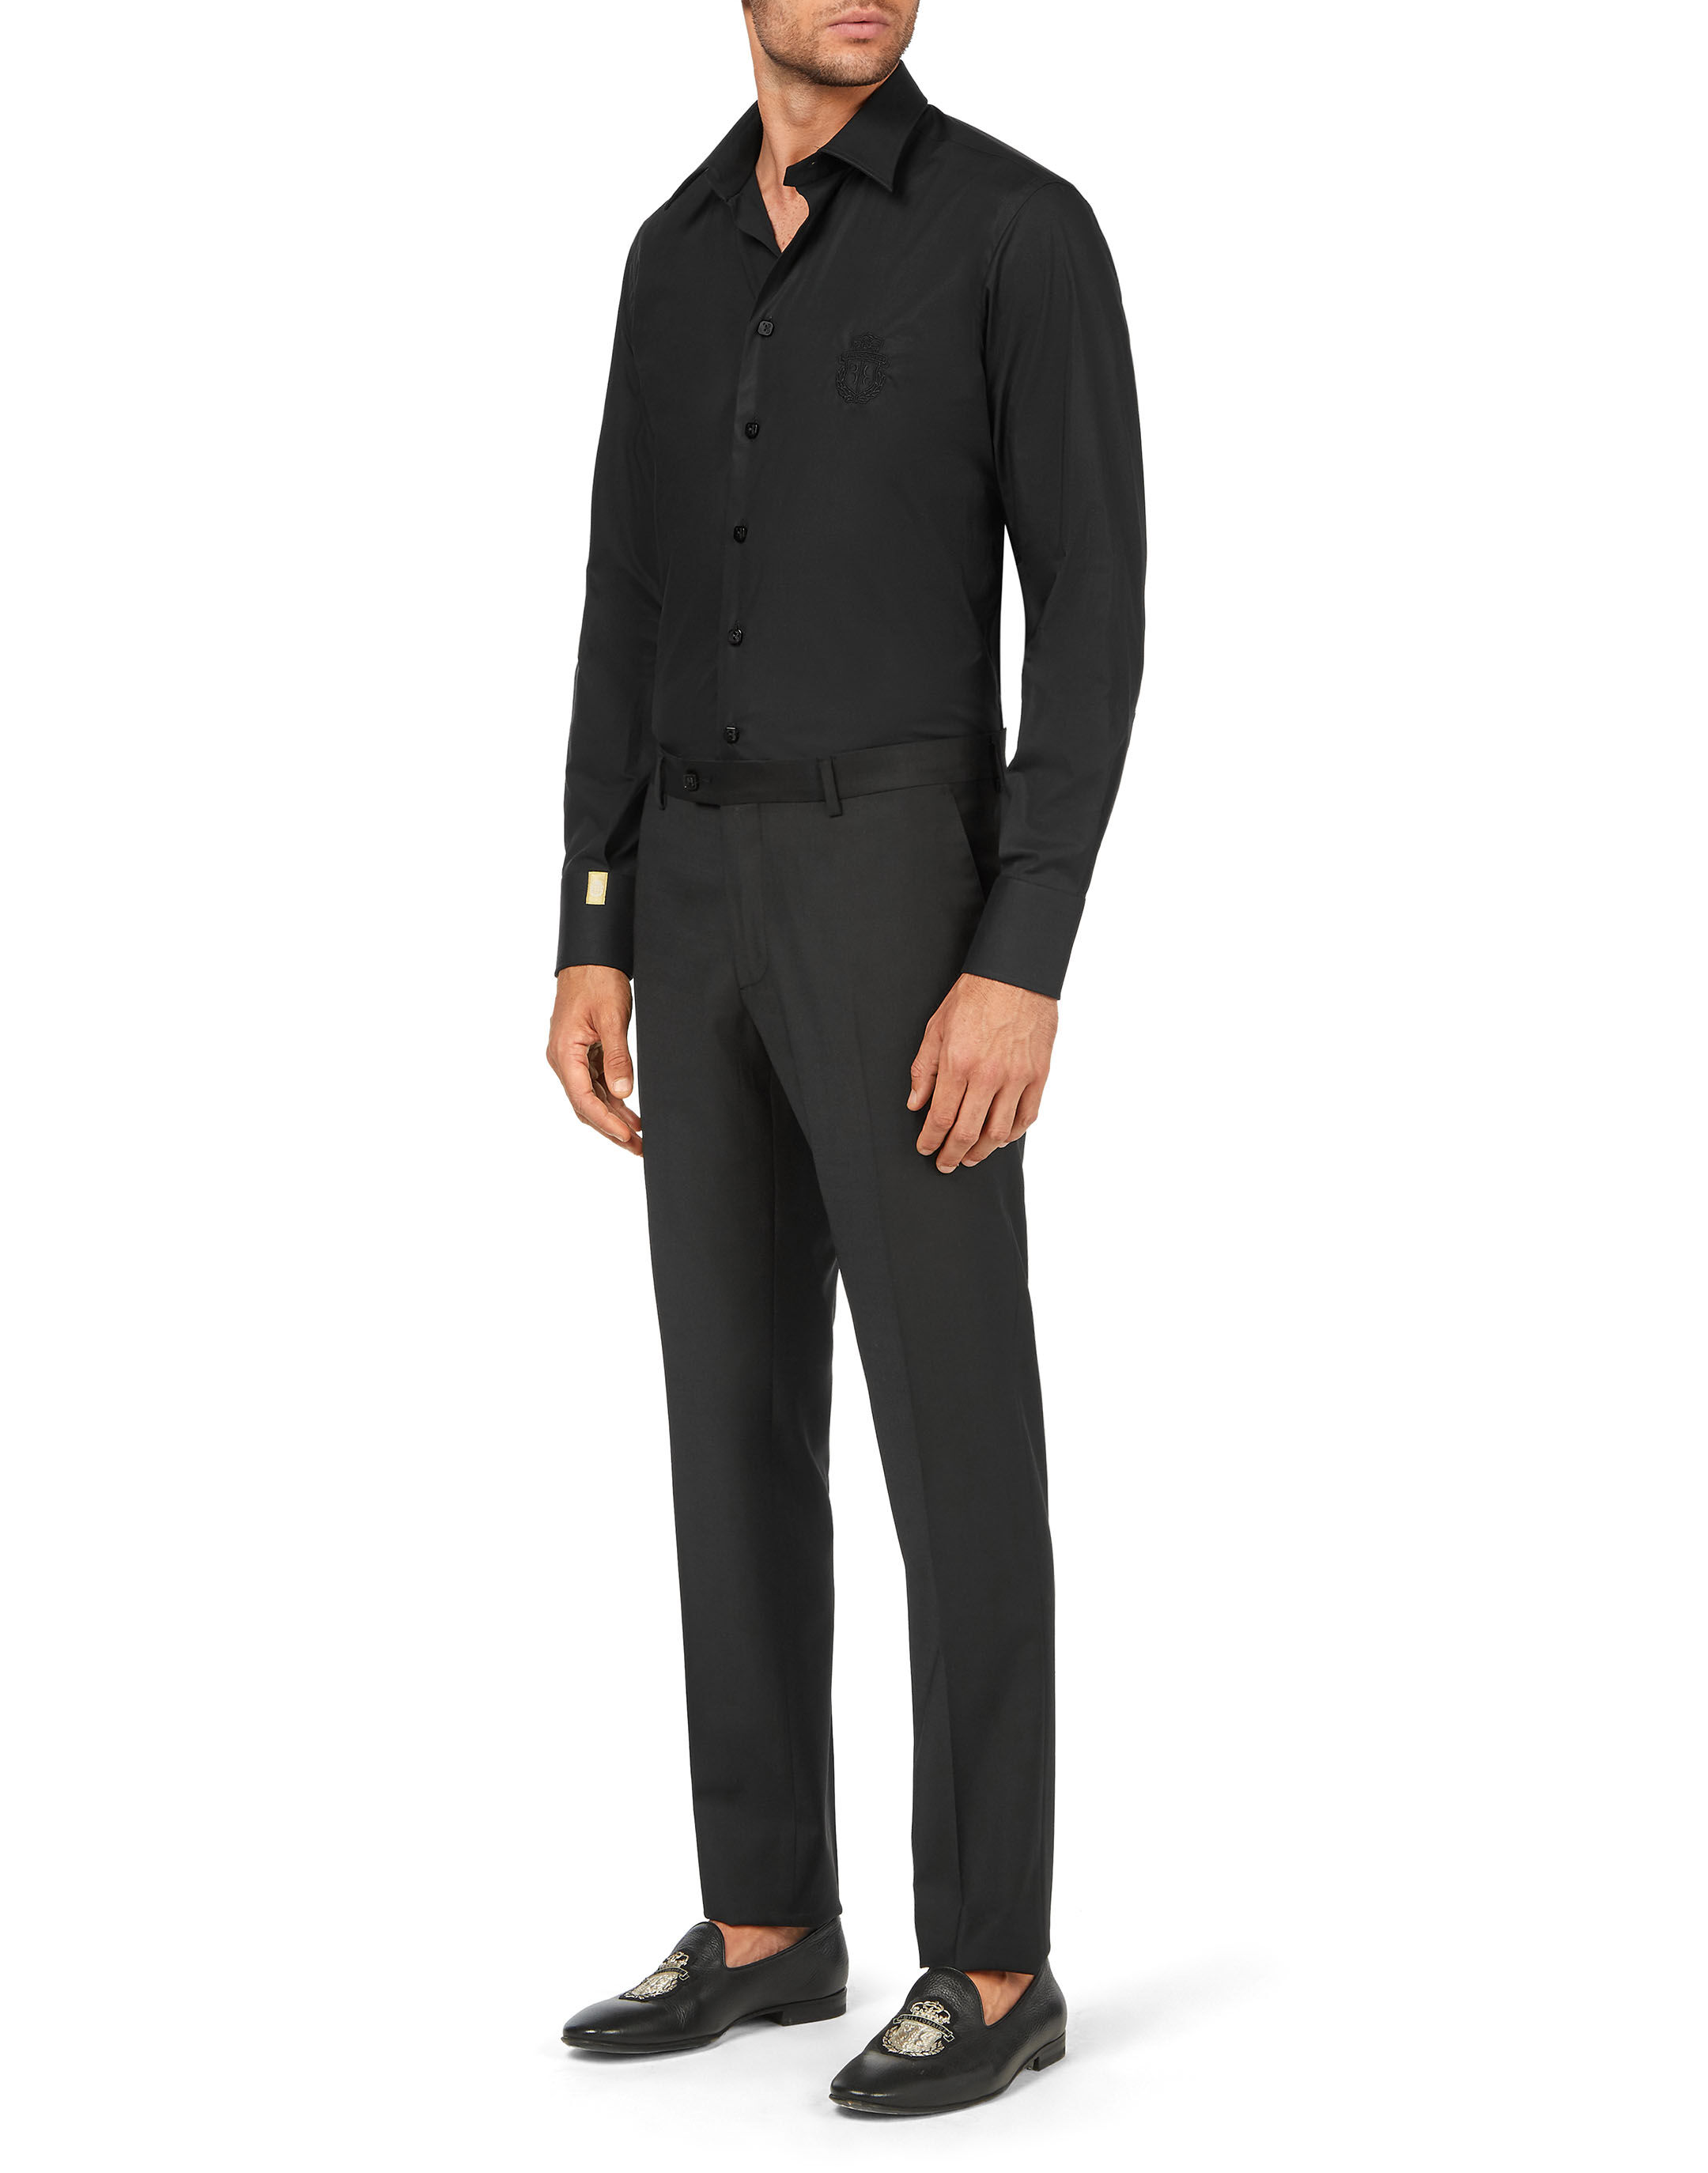 Funicet Black and Friday Deals blazer for men Trousers Men's Sag Pants Slim  Casual Pants Men's Autumn Straight Suit Pants - Walmart.com